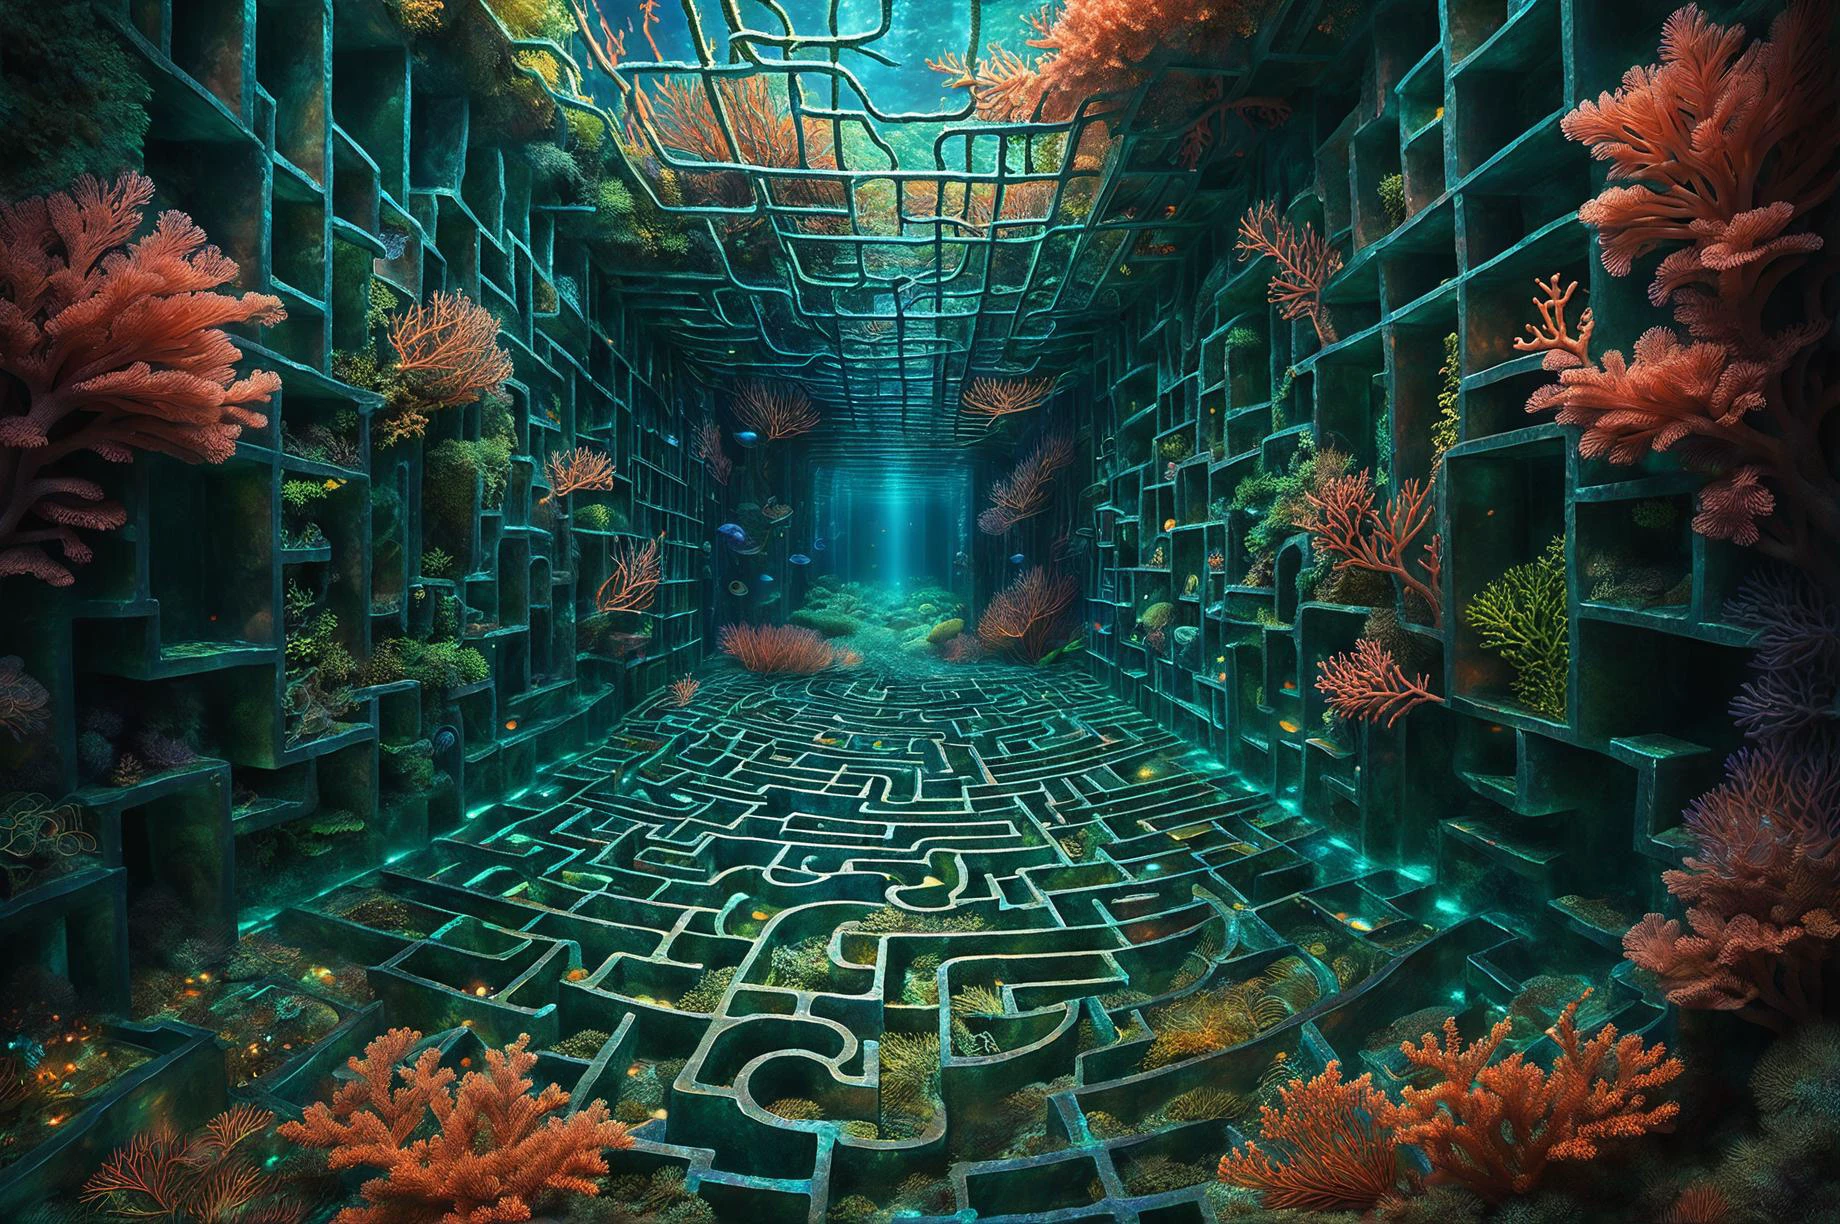 photoréaliste, illustration numérique détaillée d&#39;un labyrinthe de corail aux murs irisés, abrite des créatures marines insaisissables qui naviguent dans le labyrinthe avec grâce, laissant des traînées de sentiers biologiques brillants dans leur sillage PENeonUV, Liminal